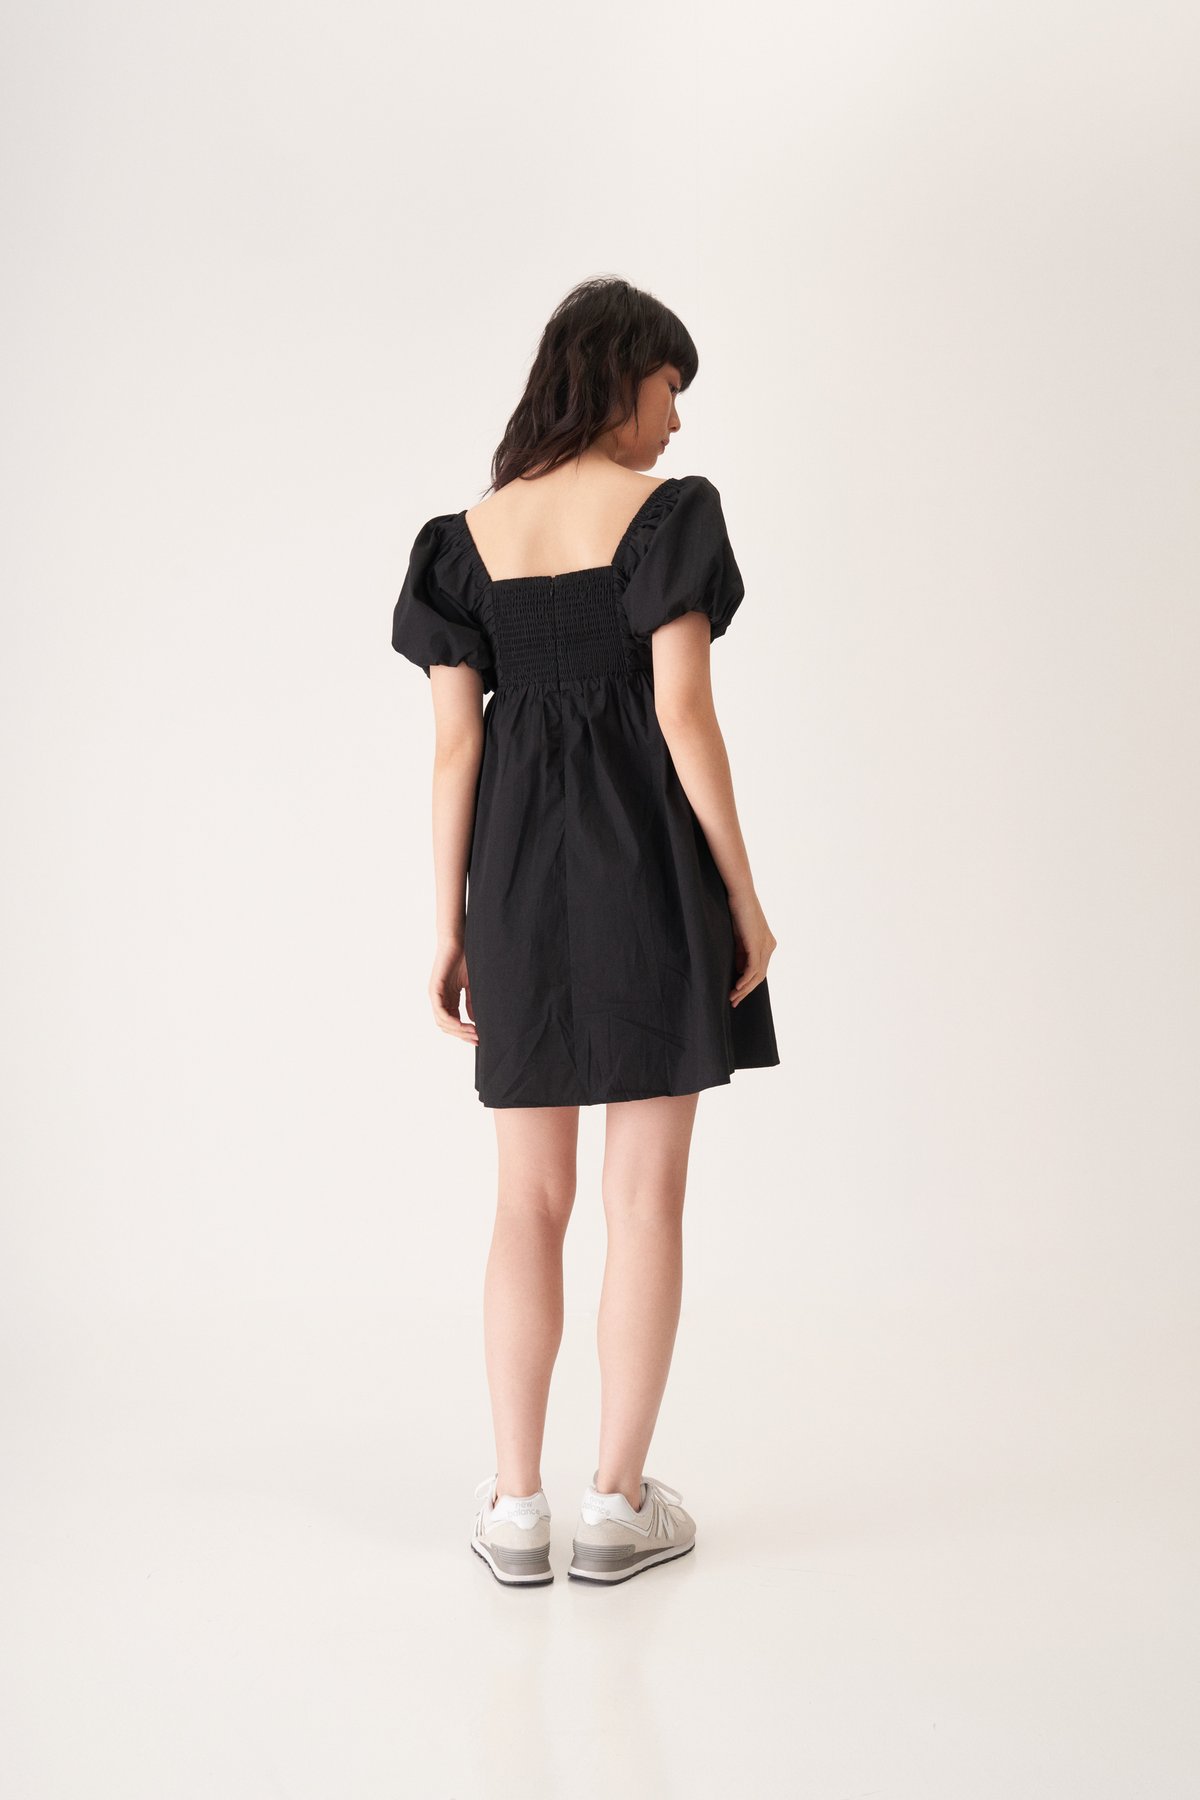 Vianna Black Mini Dress